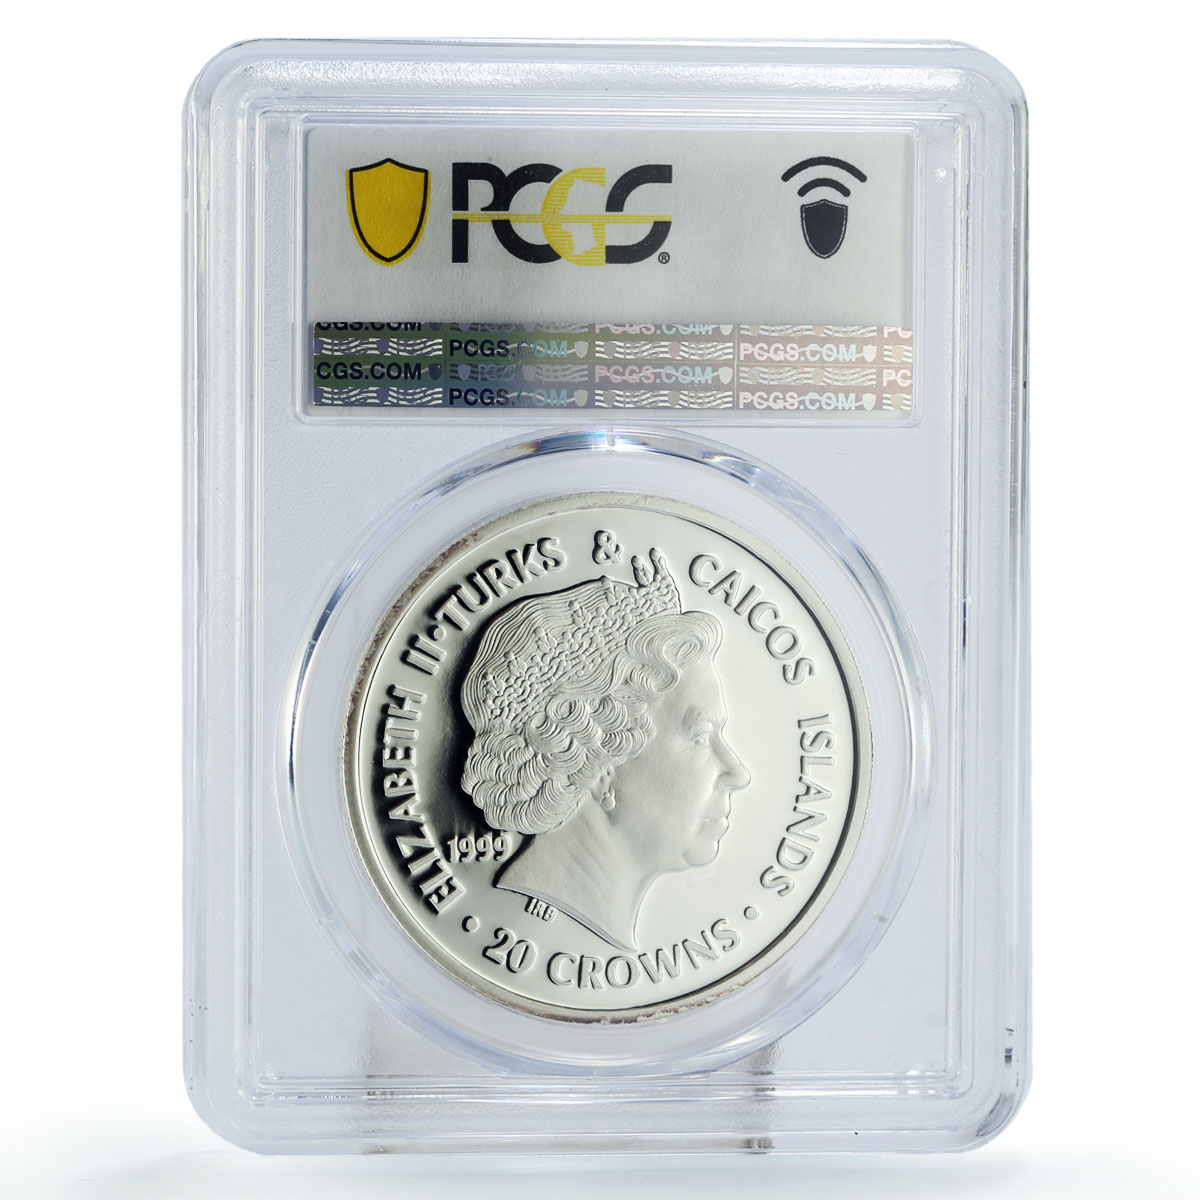 Turks and Caicos Islands 20 crown Apollo 11 Armstrong PR67 PCGS silver coin 1999